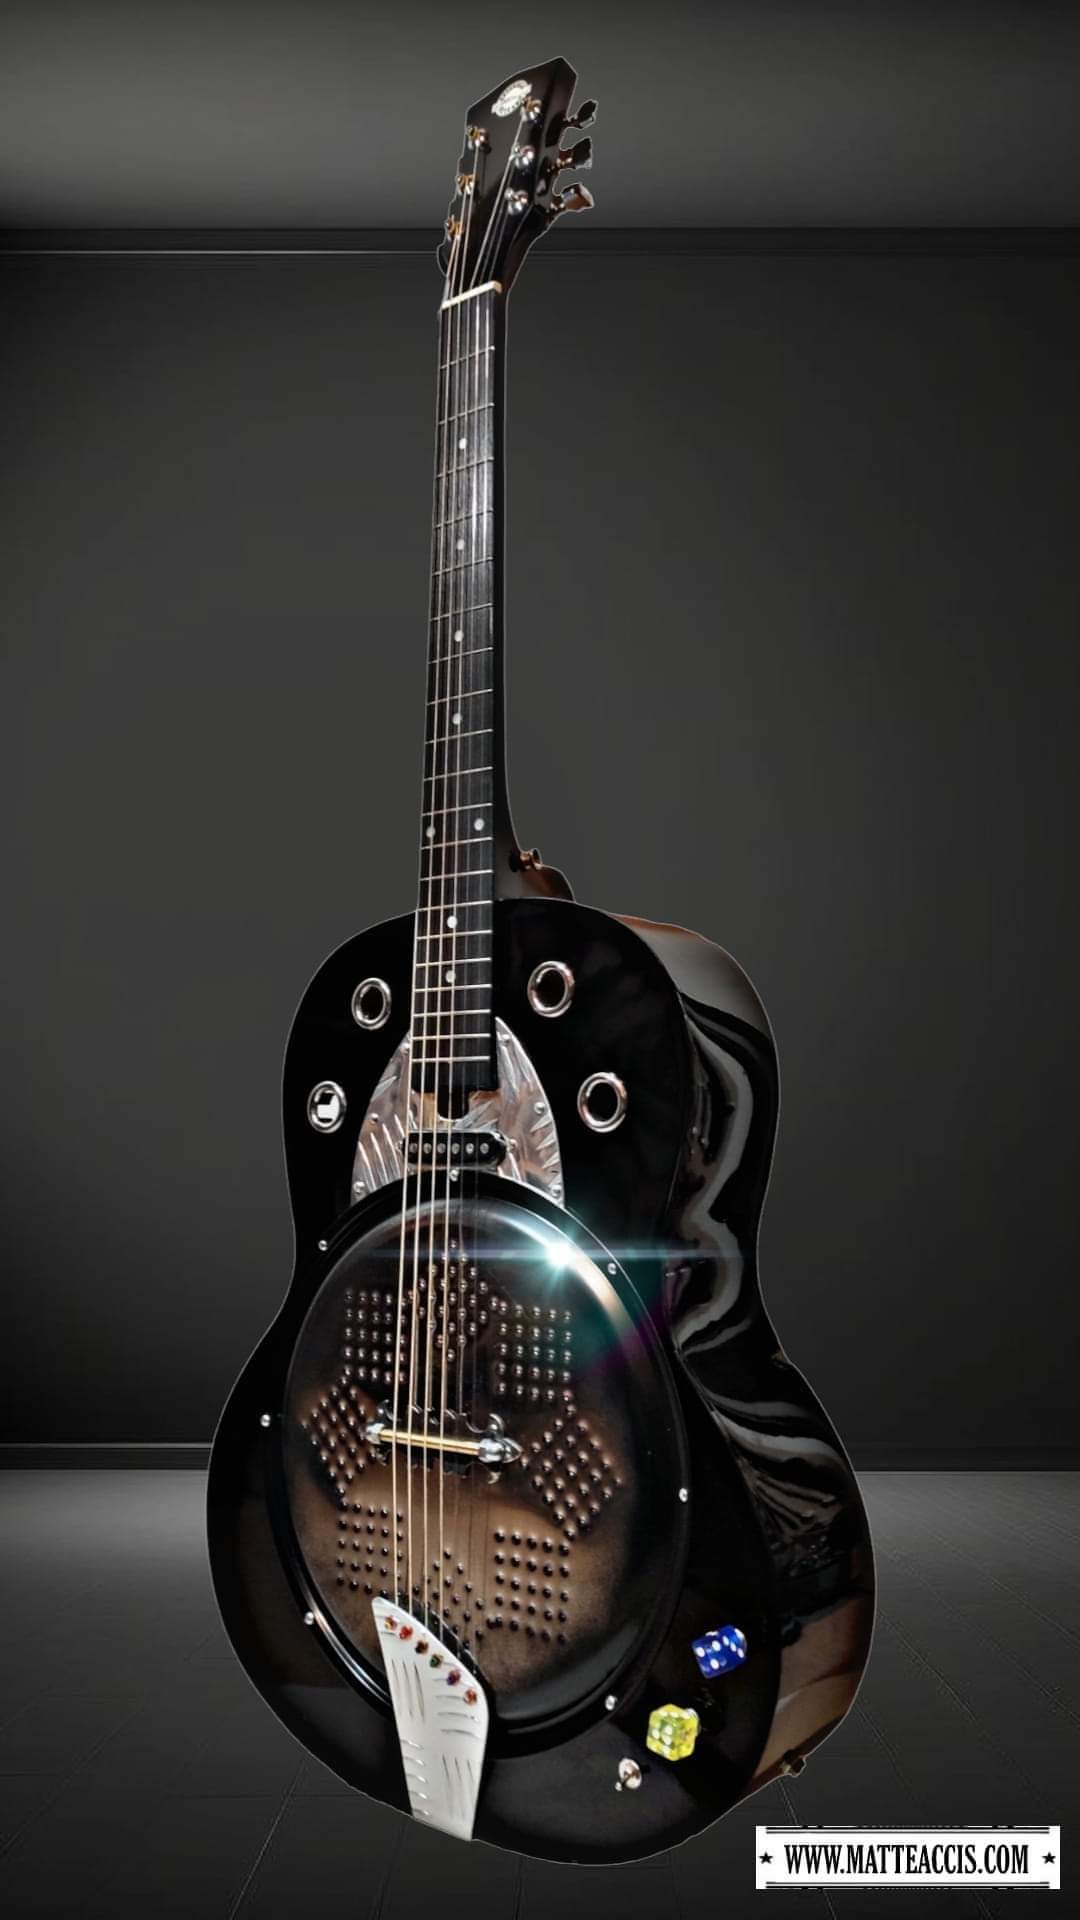 In arrivo il nuovo sistema di amplificazione del suono delle chitarre resofoniche artigianali modello Resobelle